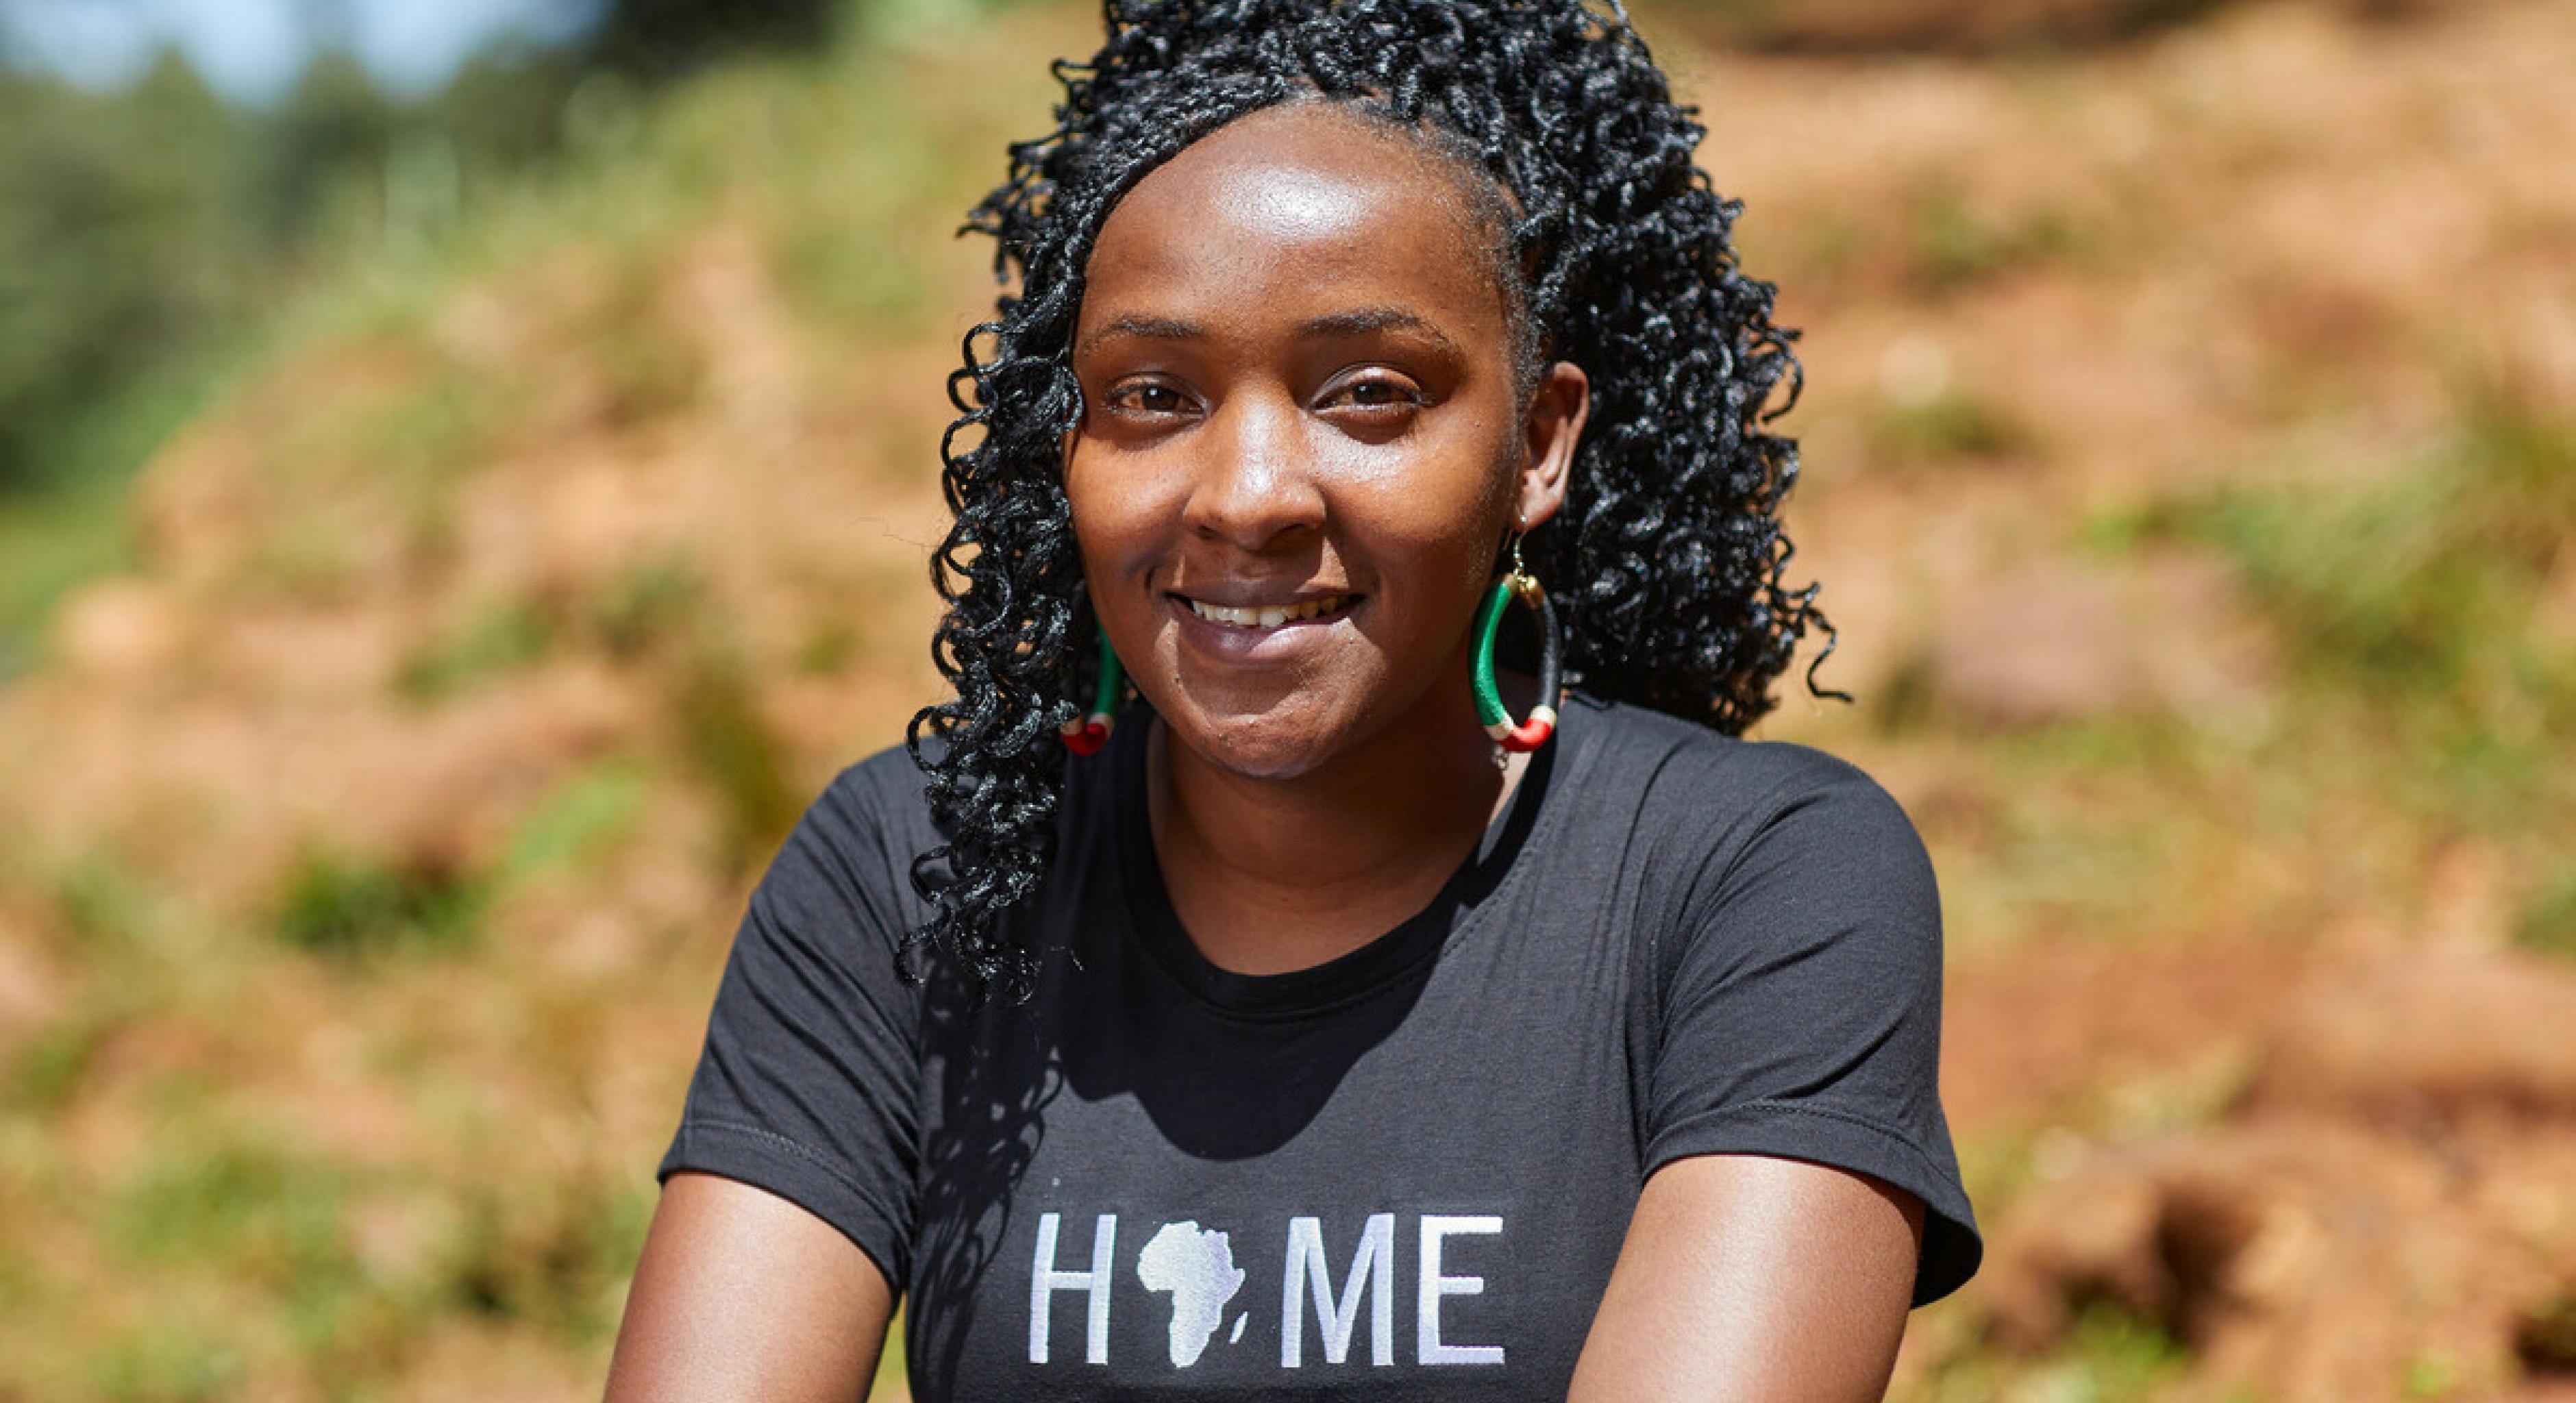 Elizabeth Wanjiru Wathuti lächelt in die Kamera. Sie gründete 2016 in Kenia die Green Generation Initiative, um mehr junge Menschen für den Klimaschutz und die Umweltgesundheit zu begeistern.